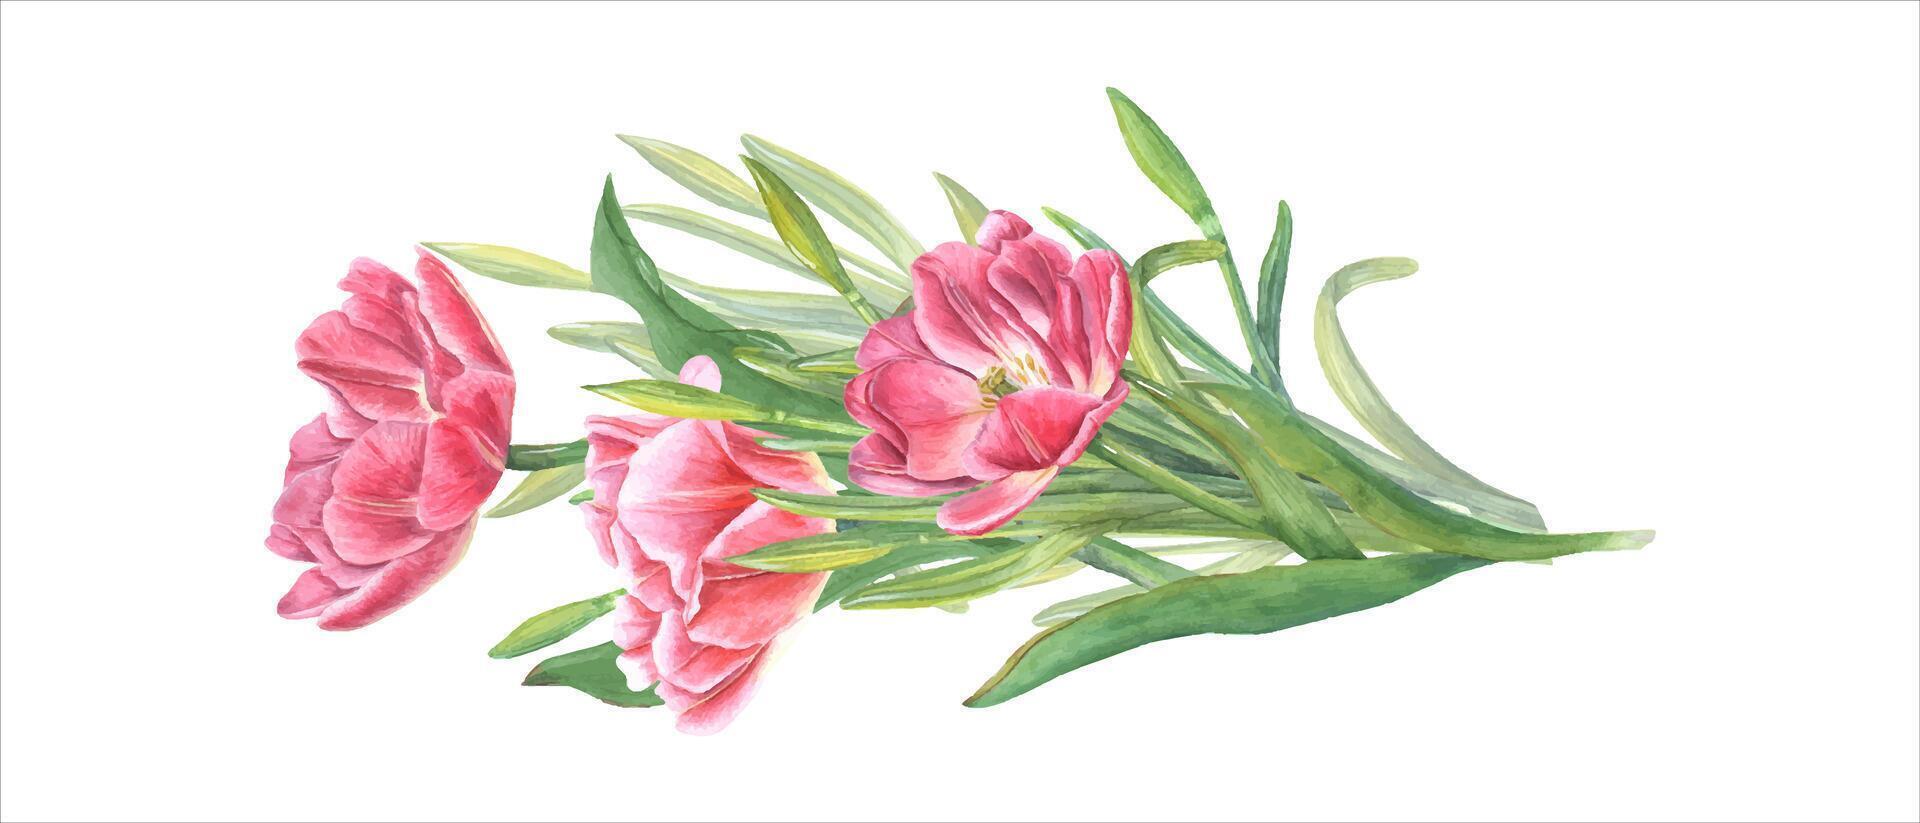 rose tulipes et jonquilles. printemps fleur bouquet. aquarelle illustration pour le conception de cartes postales, salutations, motifs, pour enregistrer le date, valentines jour, anniversaire, mariage cartes vecteur